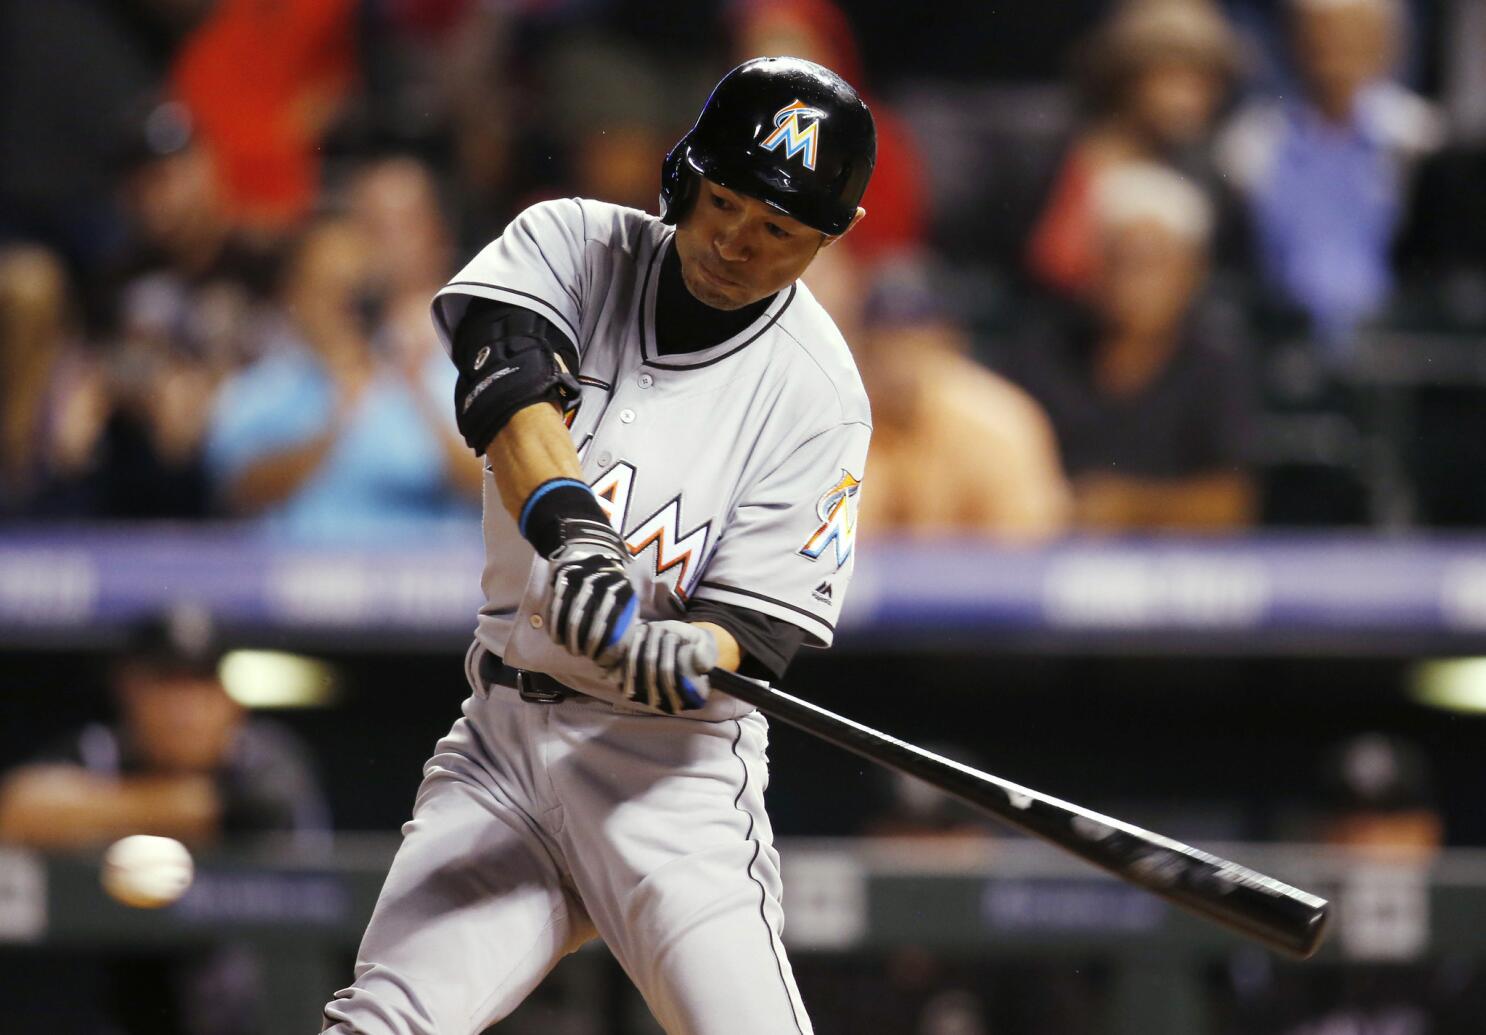 Ichiro Suzuki gets 3,000th career hit in MLB